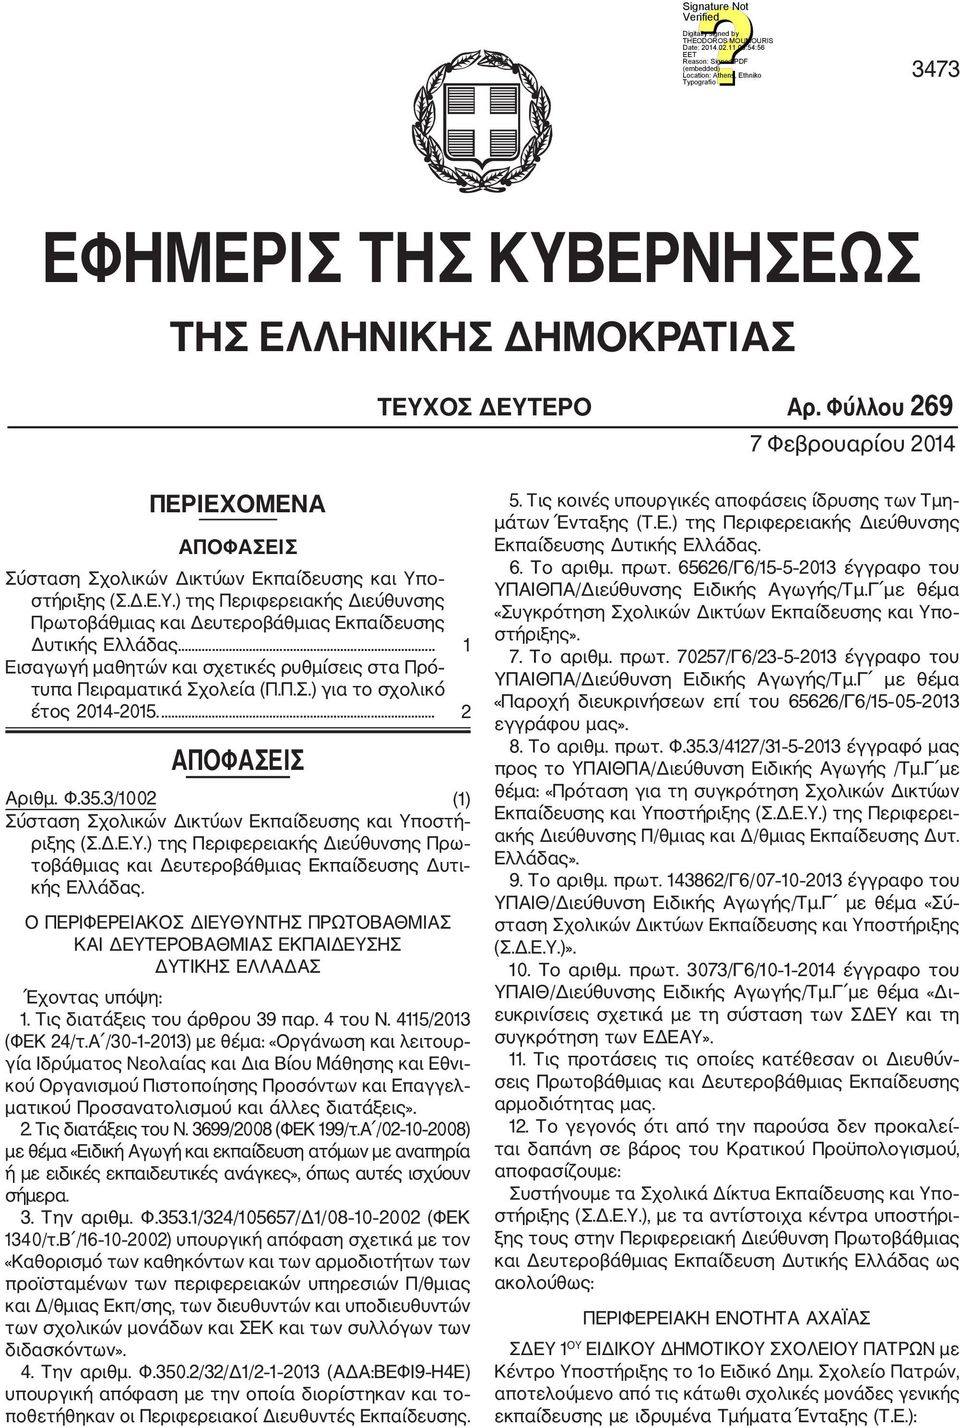 3/1002 (1) Σύσταση Σχολικών Δικτύων Εκπαίδευσης και Υποστή ριξης (Σ.Δ.Ε.Υ.) της Περιφερειακής Διεύθυνσης Πρω τοβάθμιας και Δευτεροβάθμιας Εκπαίδευσης Δυτι κής Ελλάδας.